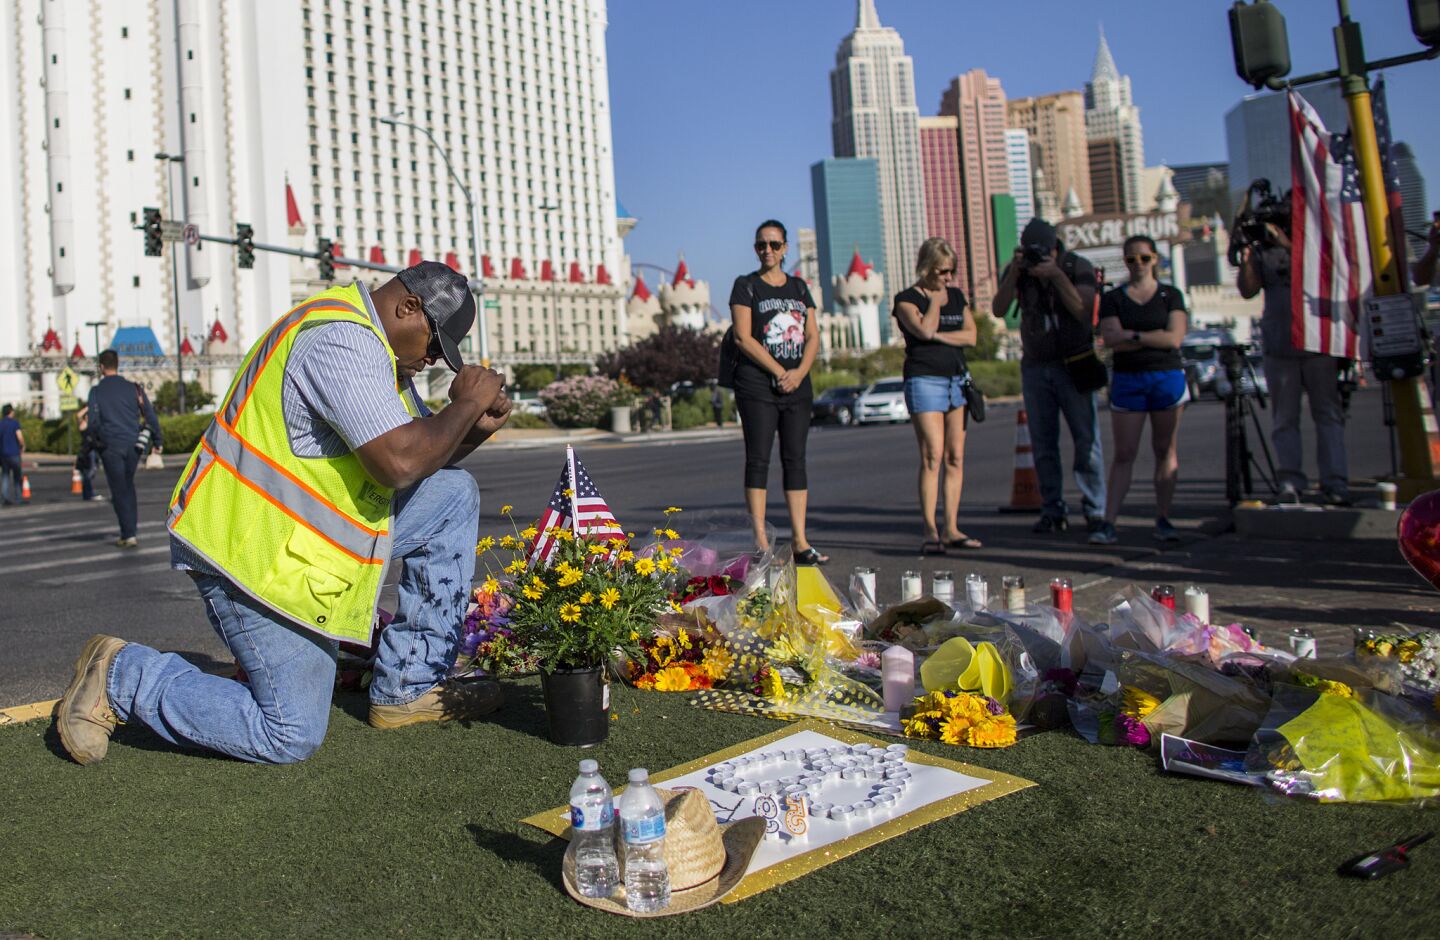 Mass shooting in Las Vegas